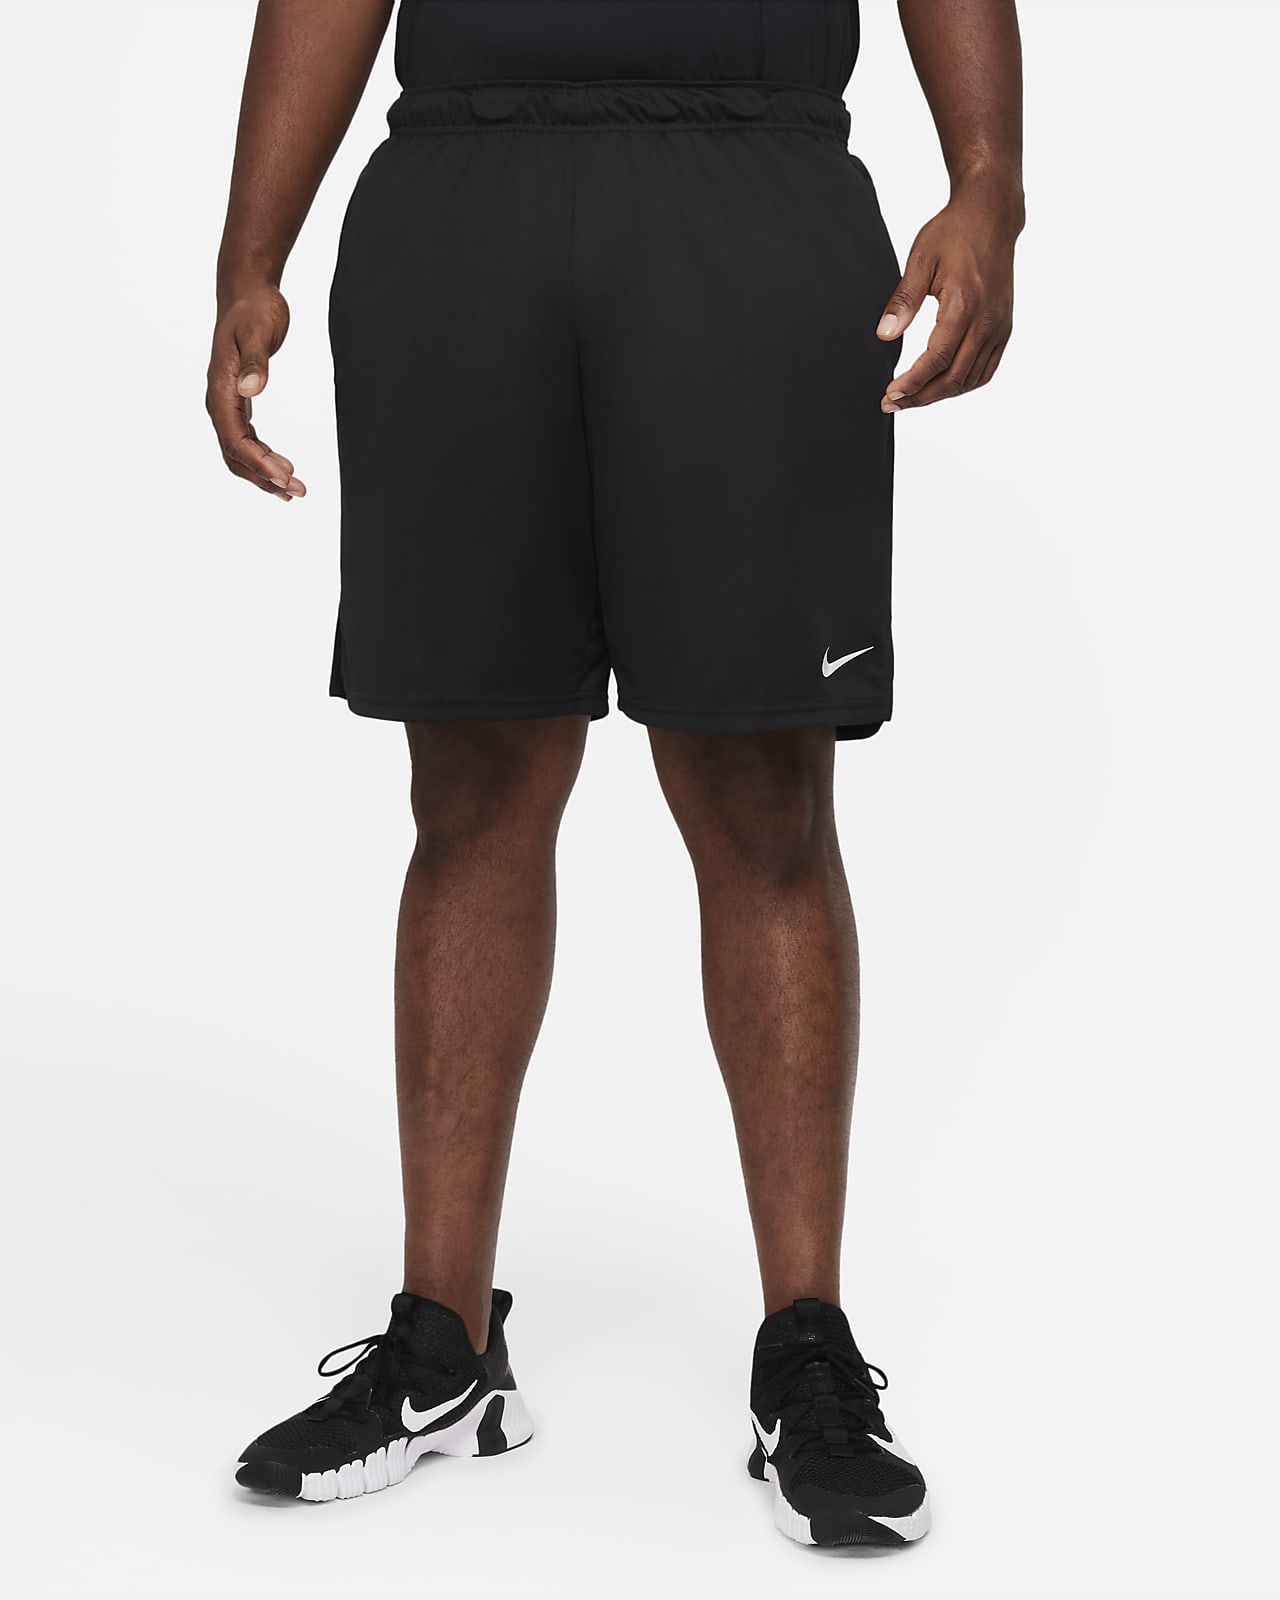 Nike Dri-FIT Men's Knit Training Shorts.